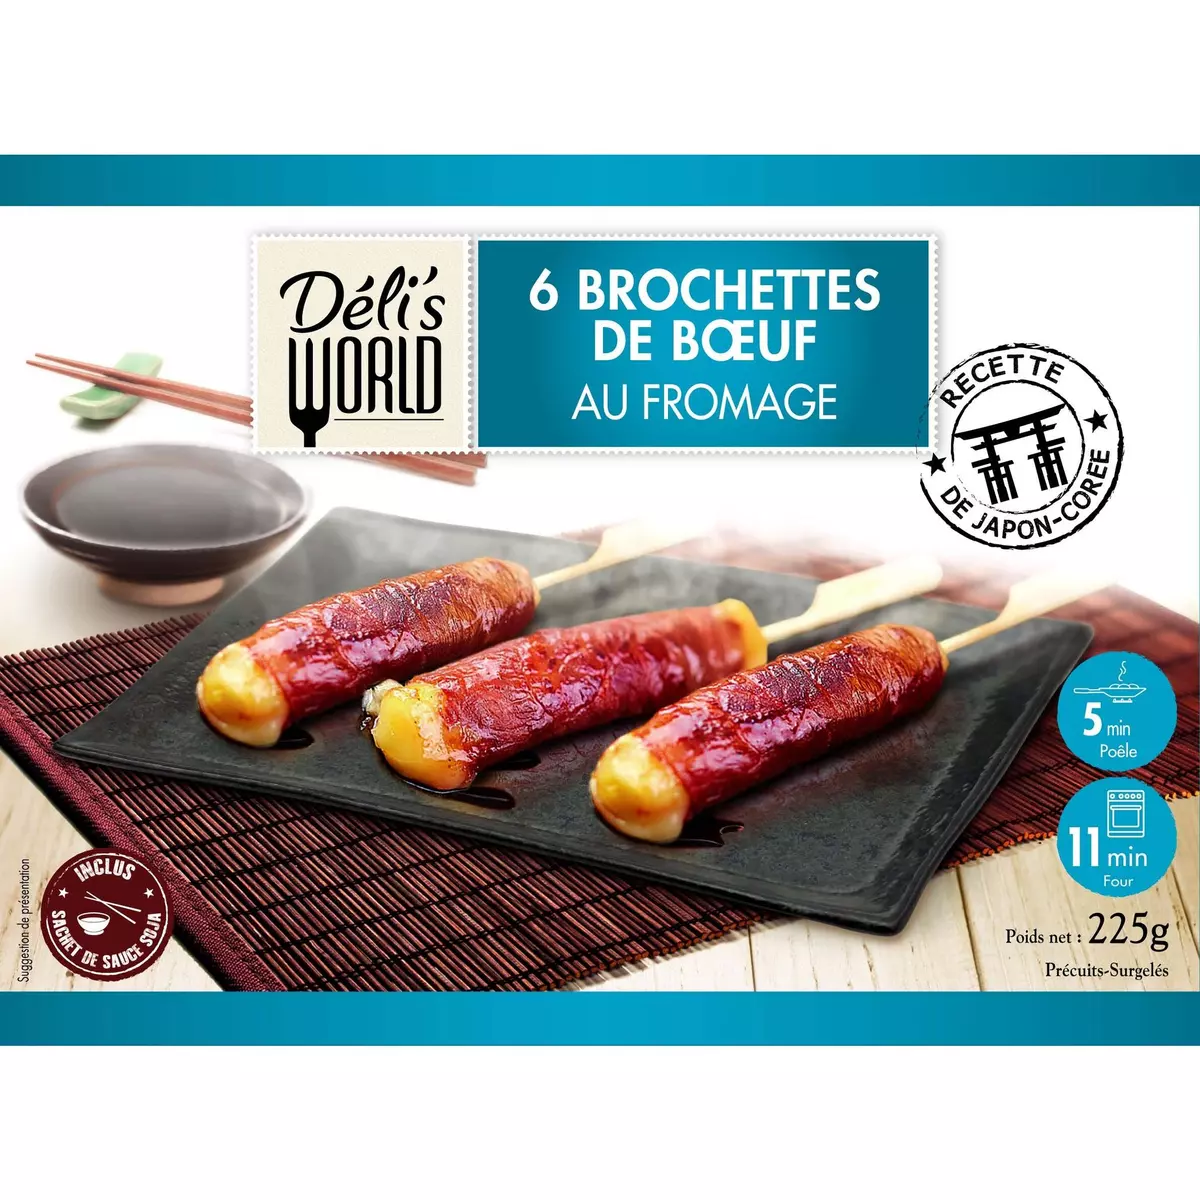 DELI'S WORLD Brochettes de bœuf au fromage 6 pièces 225g